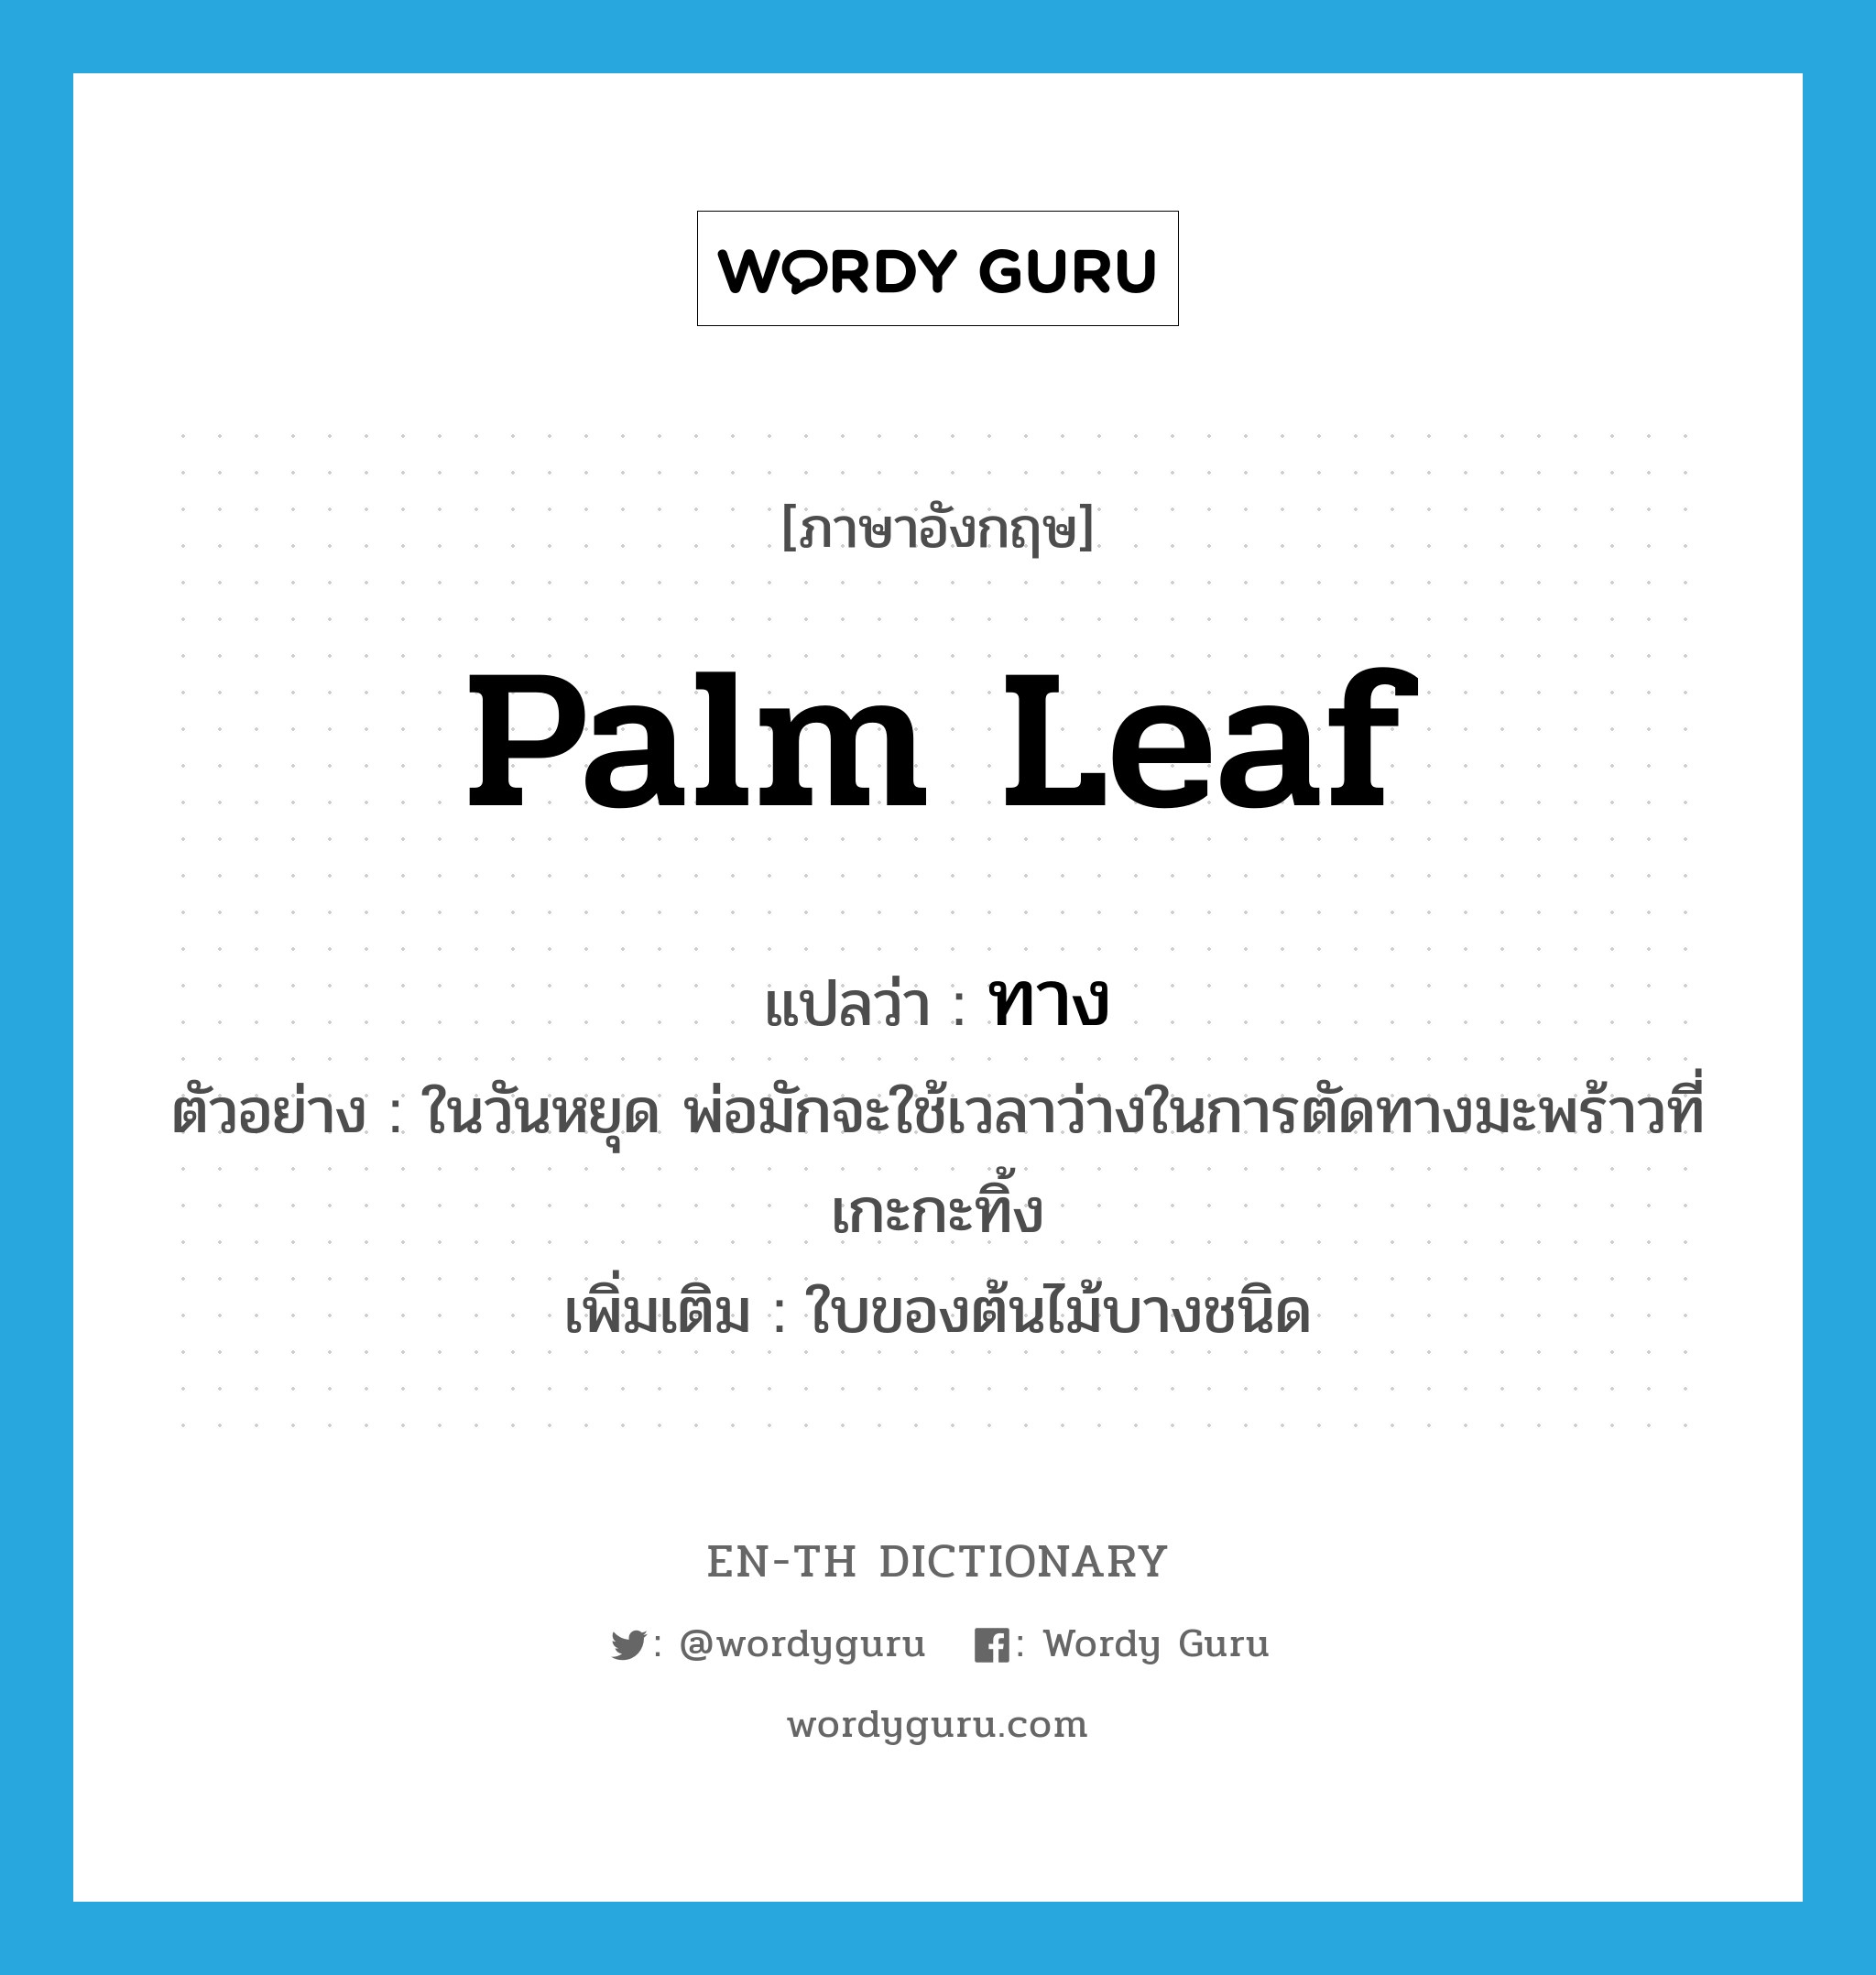 palm leaf แปลว่า?, คำศัพท์ภาษาอังกฤษ palm leaf แปลว่า ทาง ประเภท N ตัวอย่าง ในวันหยุด พ่อมักจะใช้เวลาว่างในการตัดทางมะพร้าวที่เกะกะทิ้ง เพิ่มเติม ใบของต้นไม้บางชนิด หมวด N